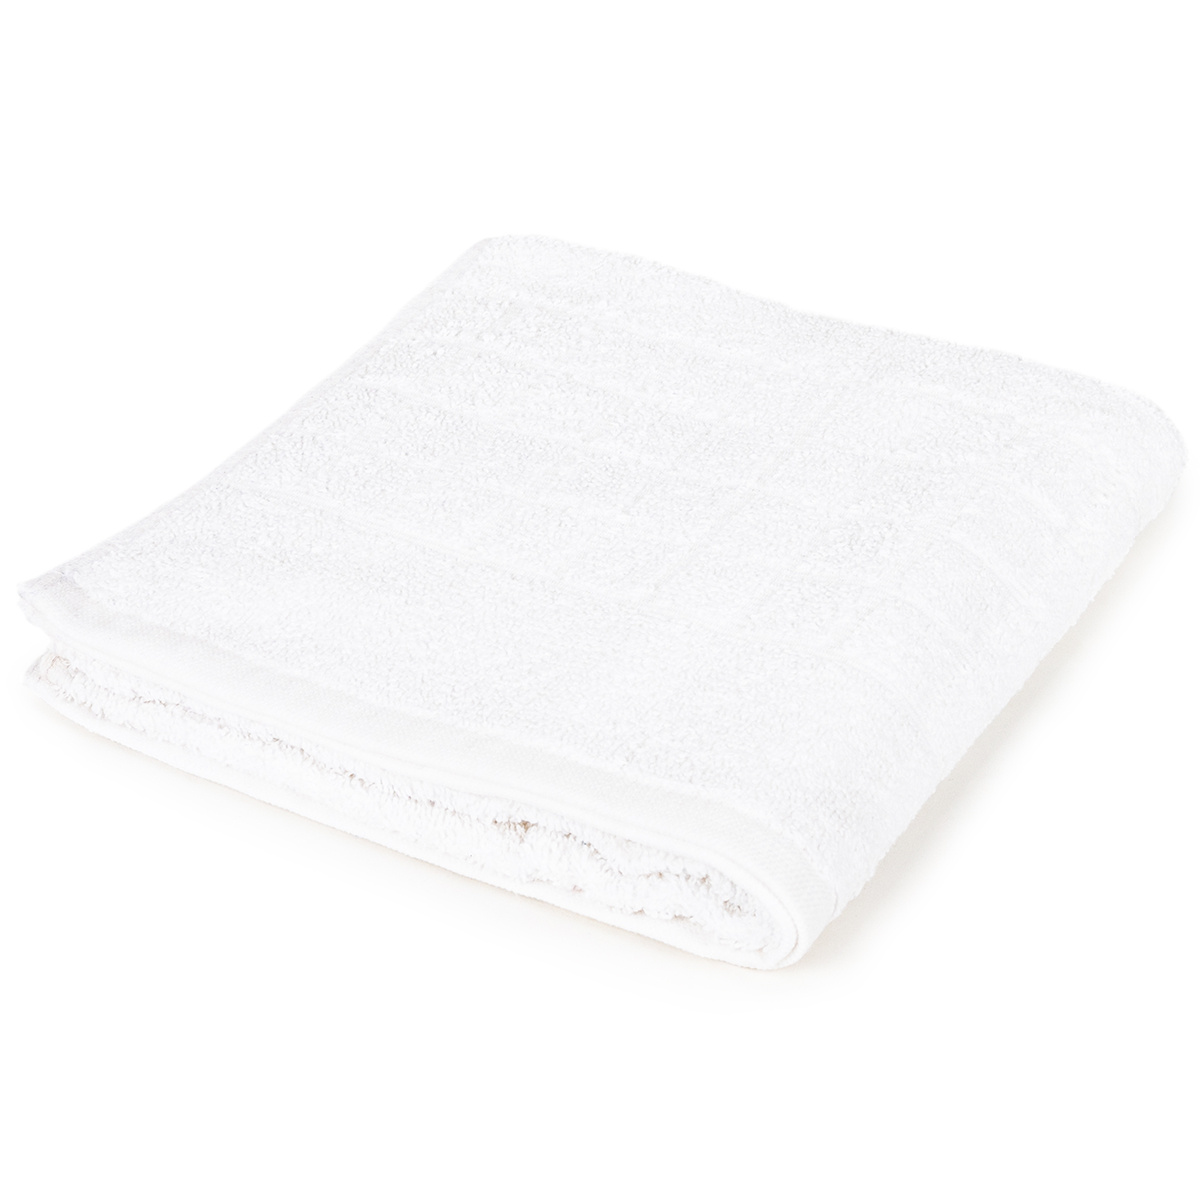 Ręcznik Soft biały, 50 x 100 cm, 50 x 100 cm